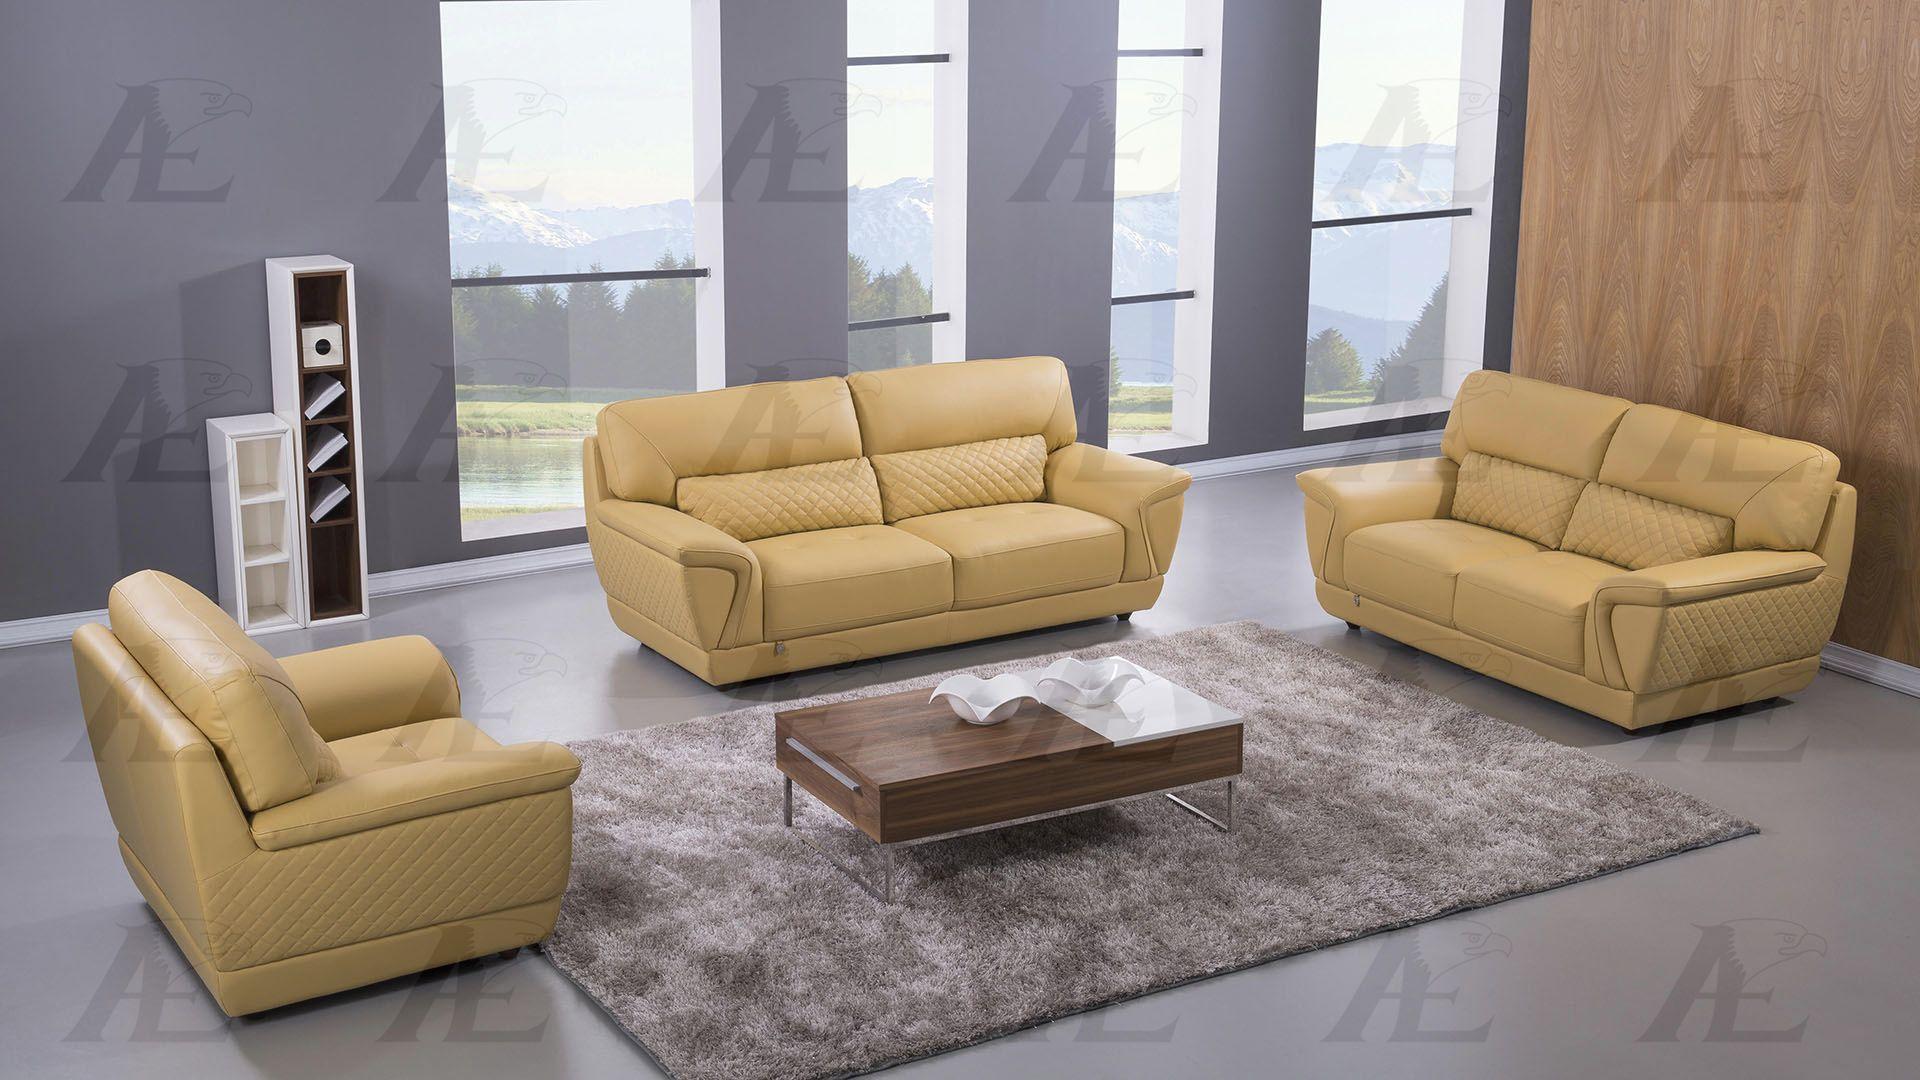 

    
American Eagle Furniture EK099-YO-LS Loveseat Yellow EK099-YO-LS
